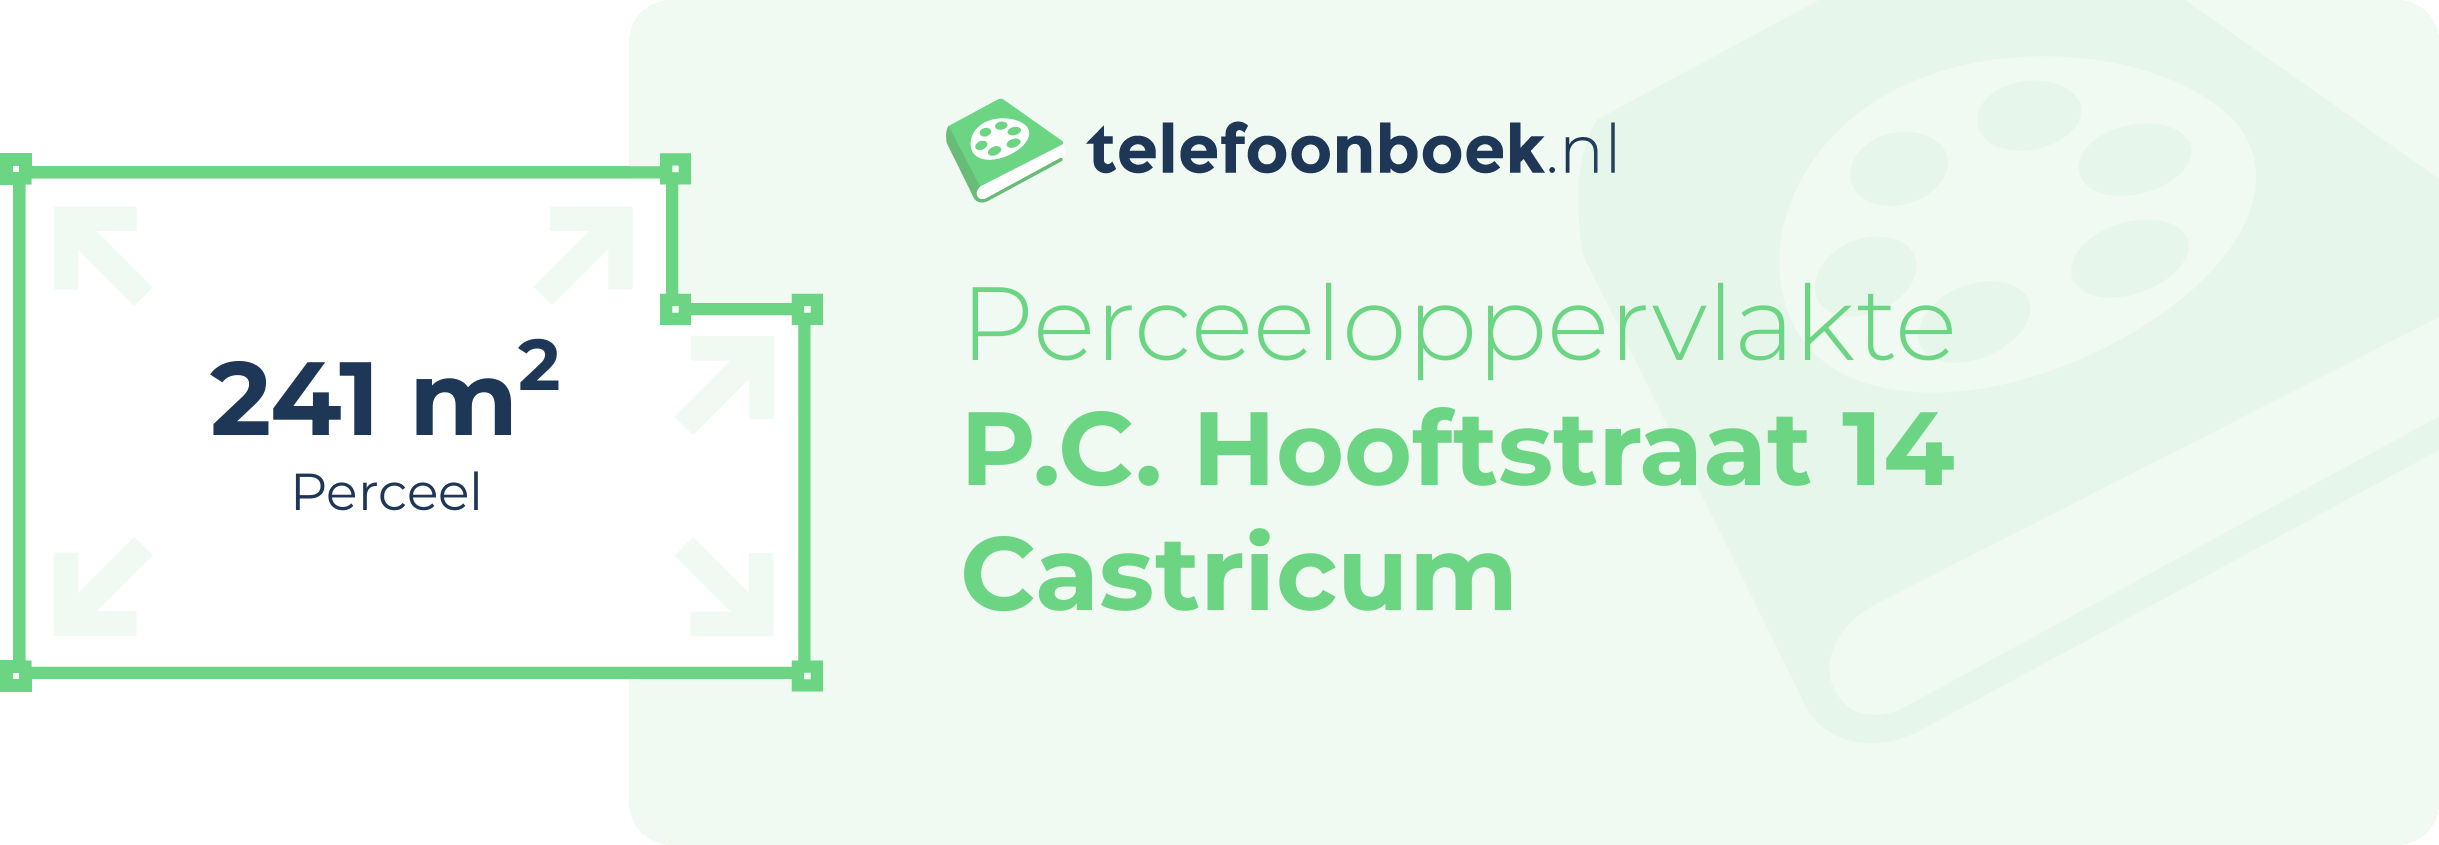 Perceeloppervlakte P.C. Hooftstraat 14 Castricum